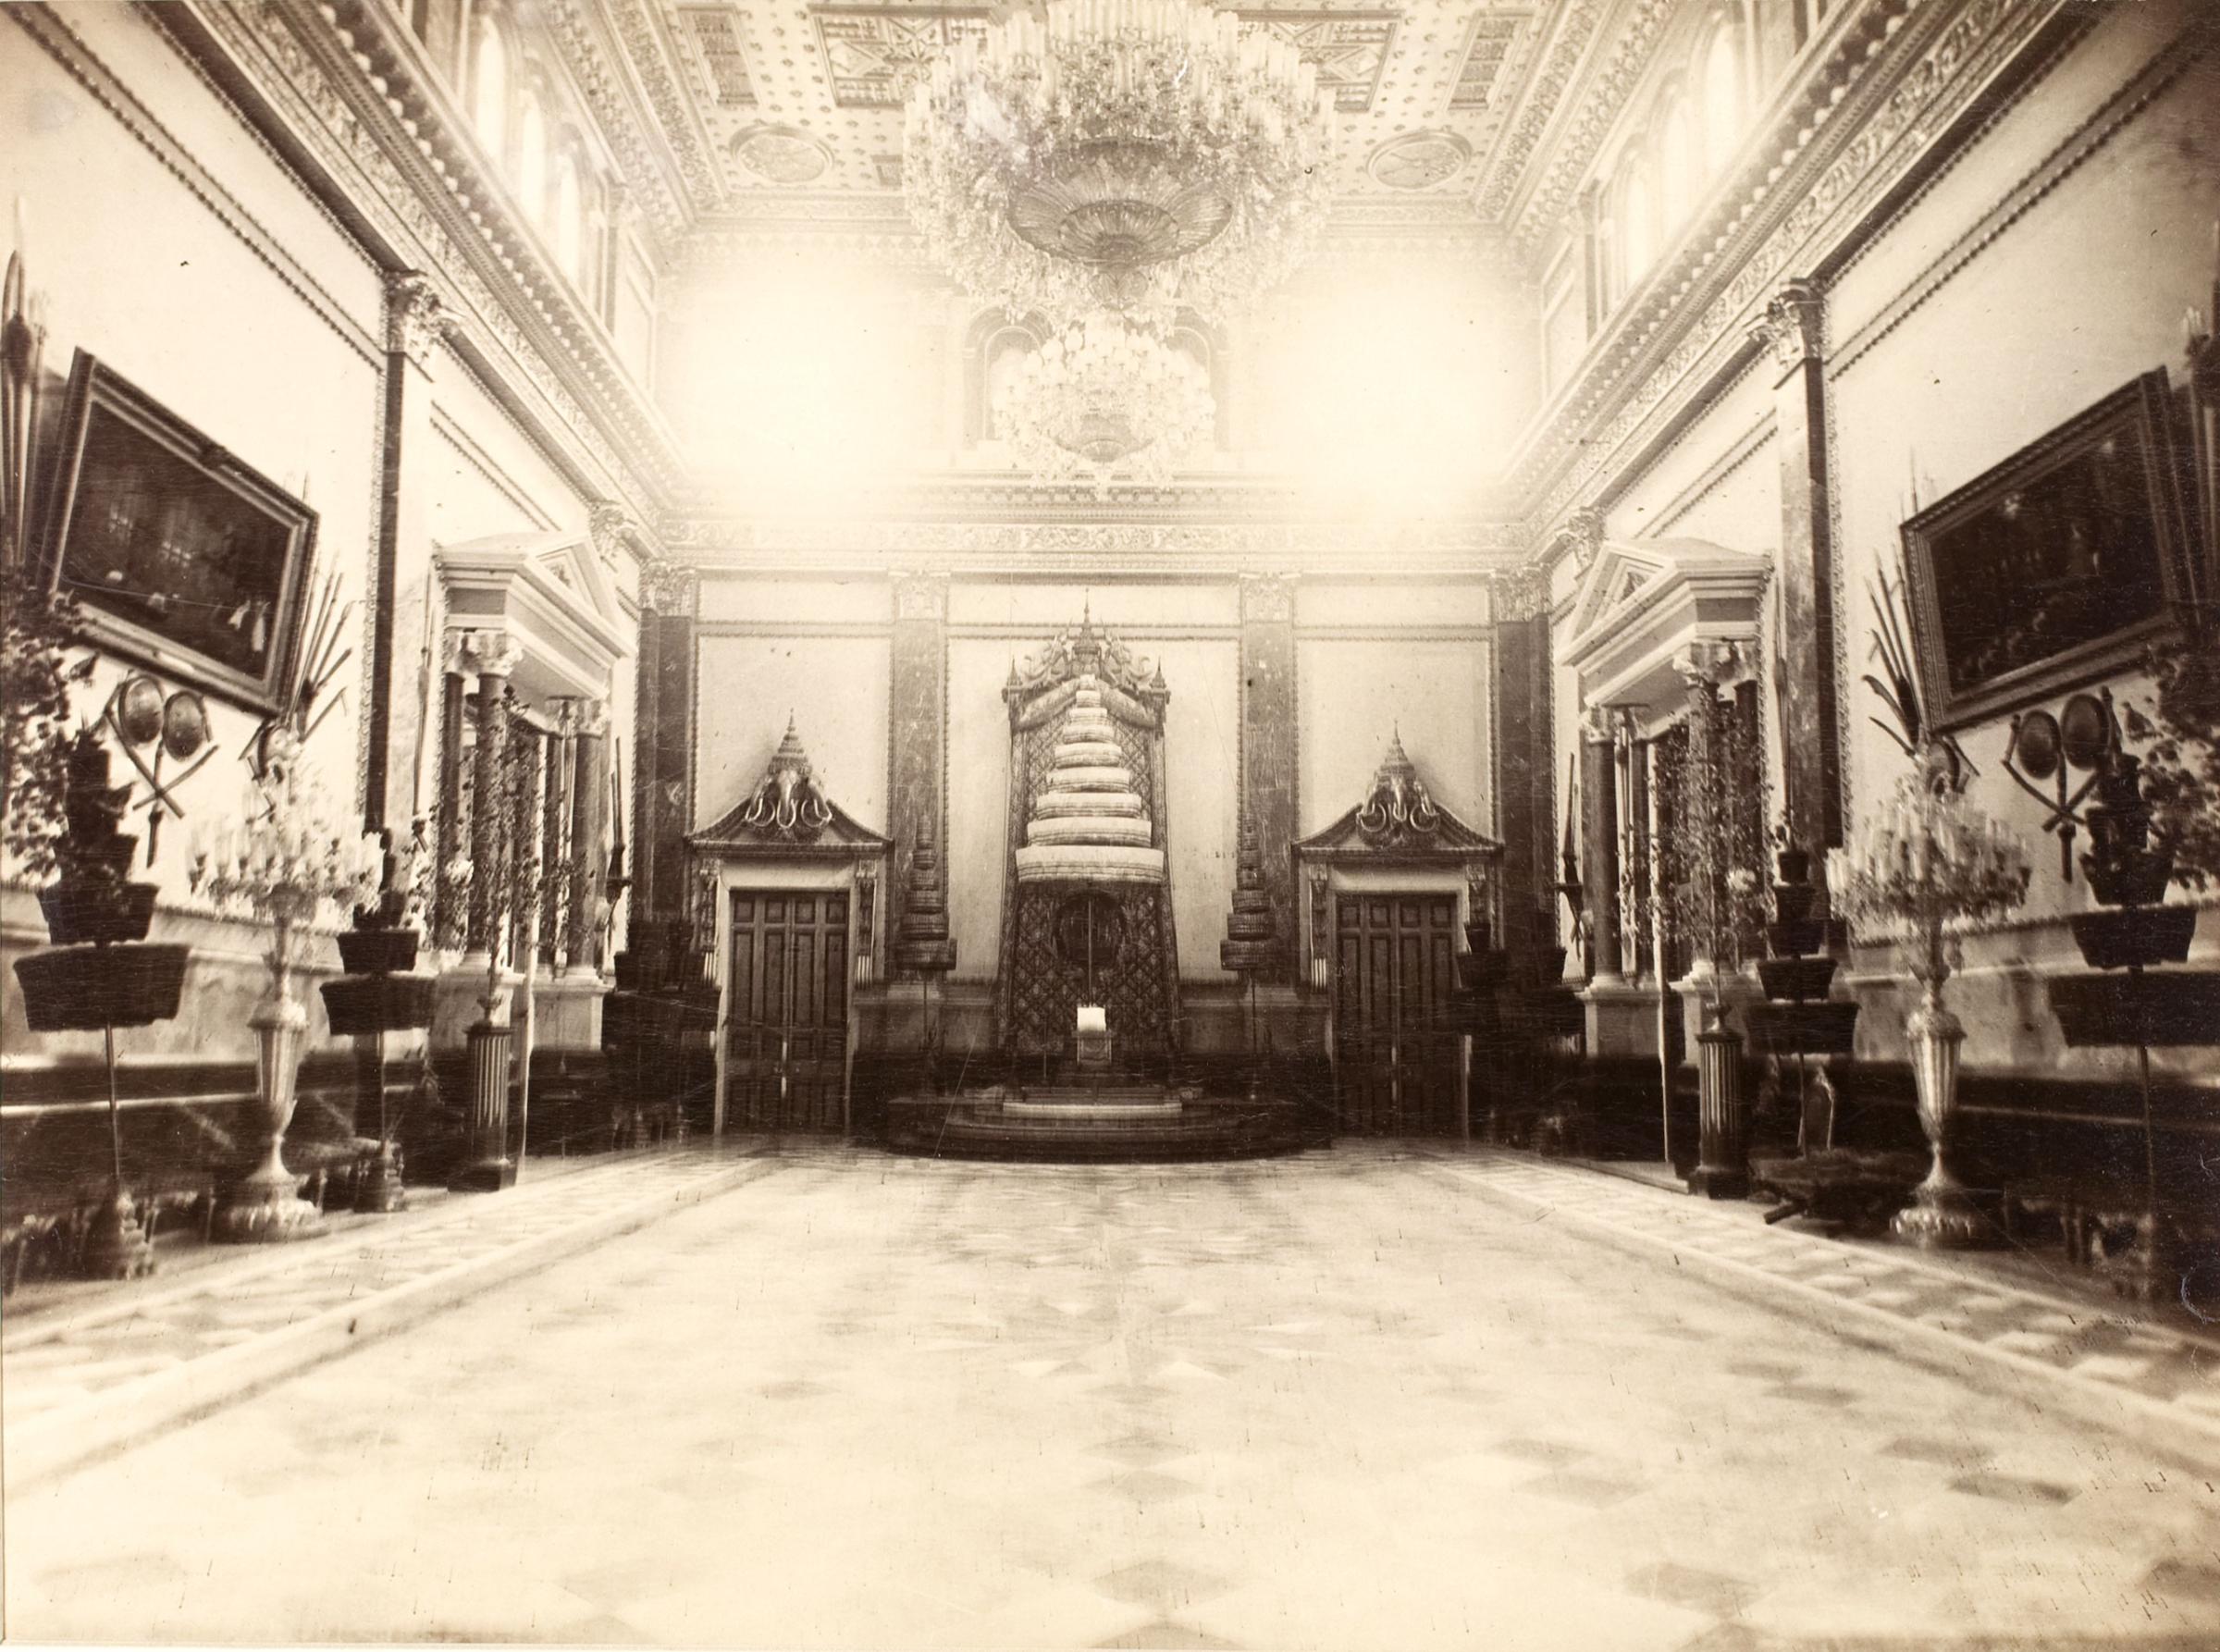 Throne room in the Maha Chakrakri Palace, Siam, 1893.